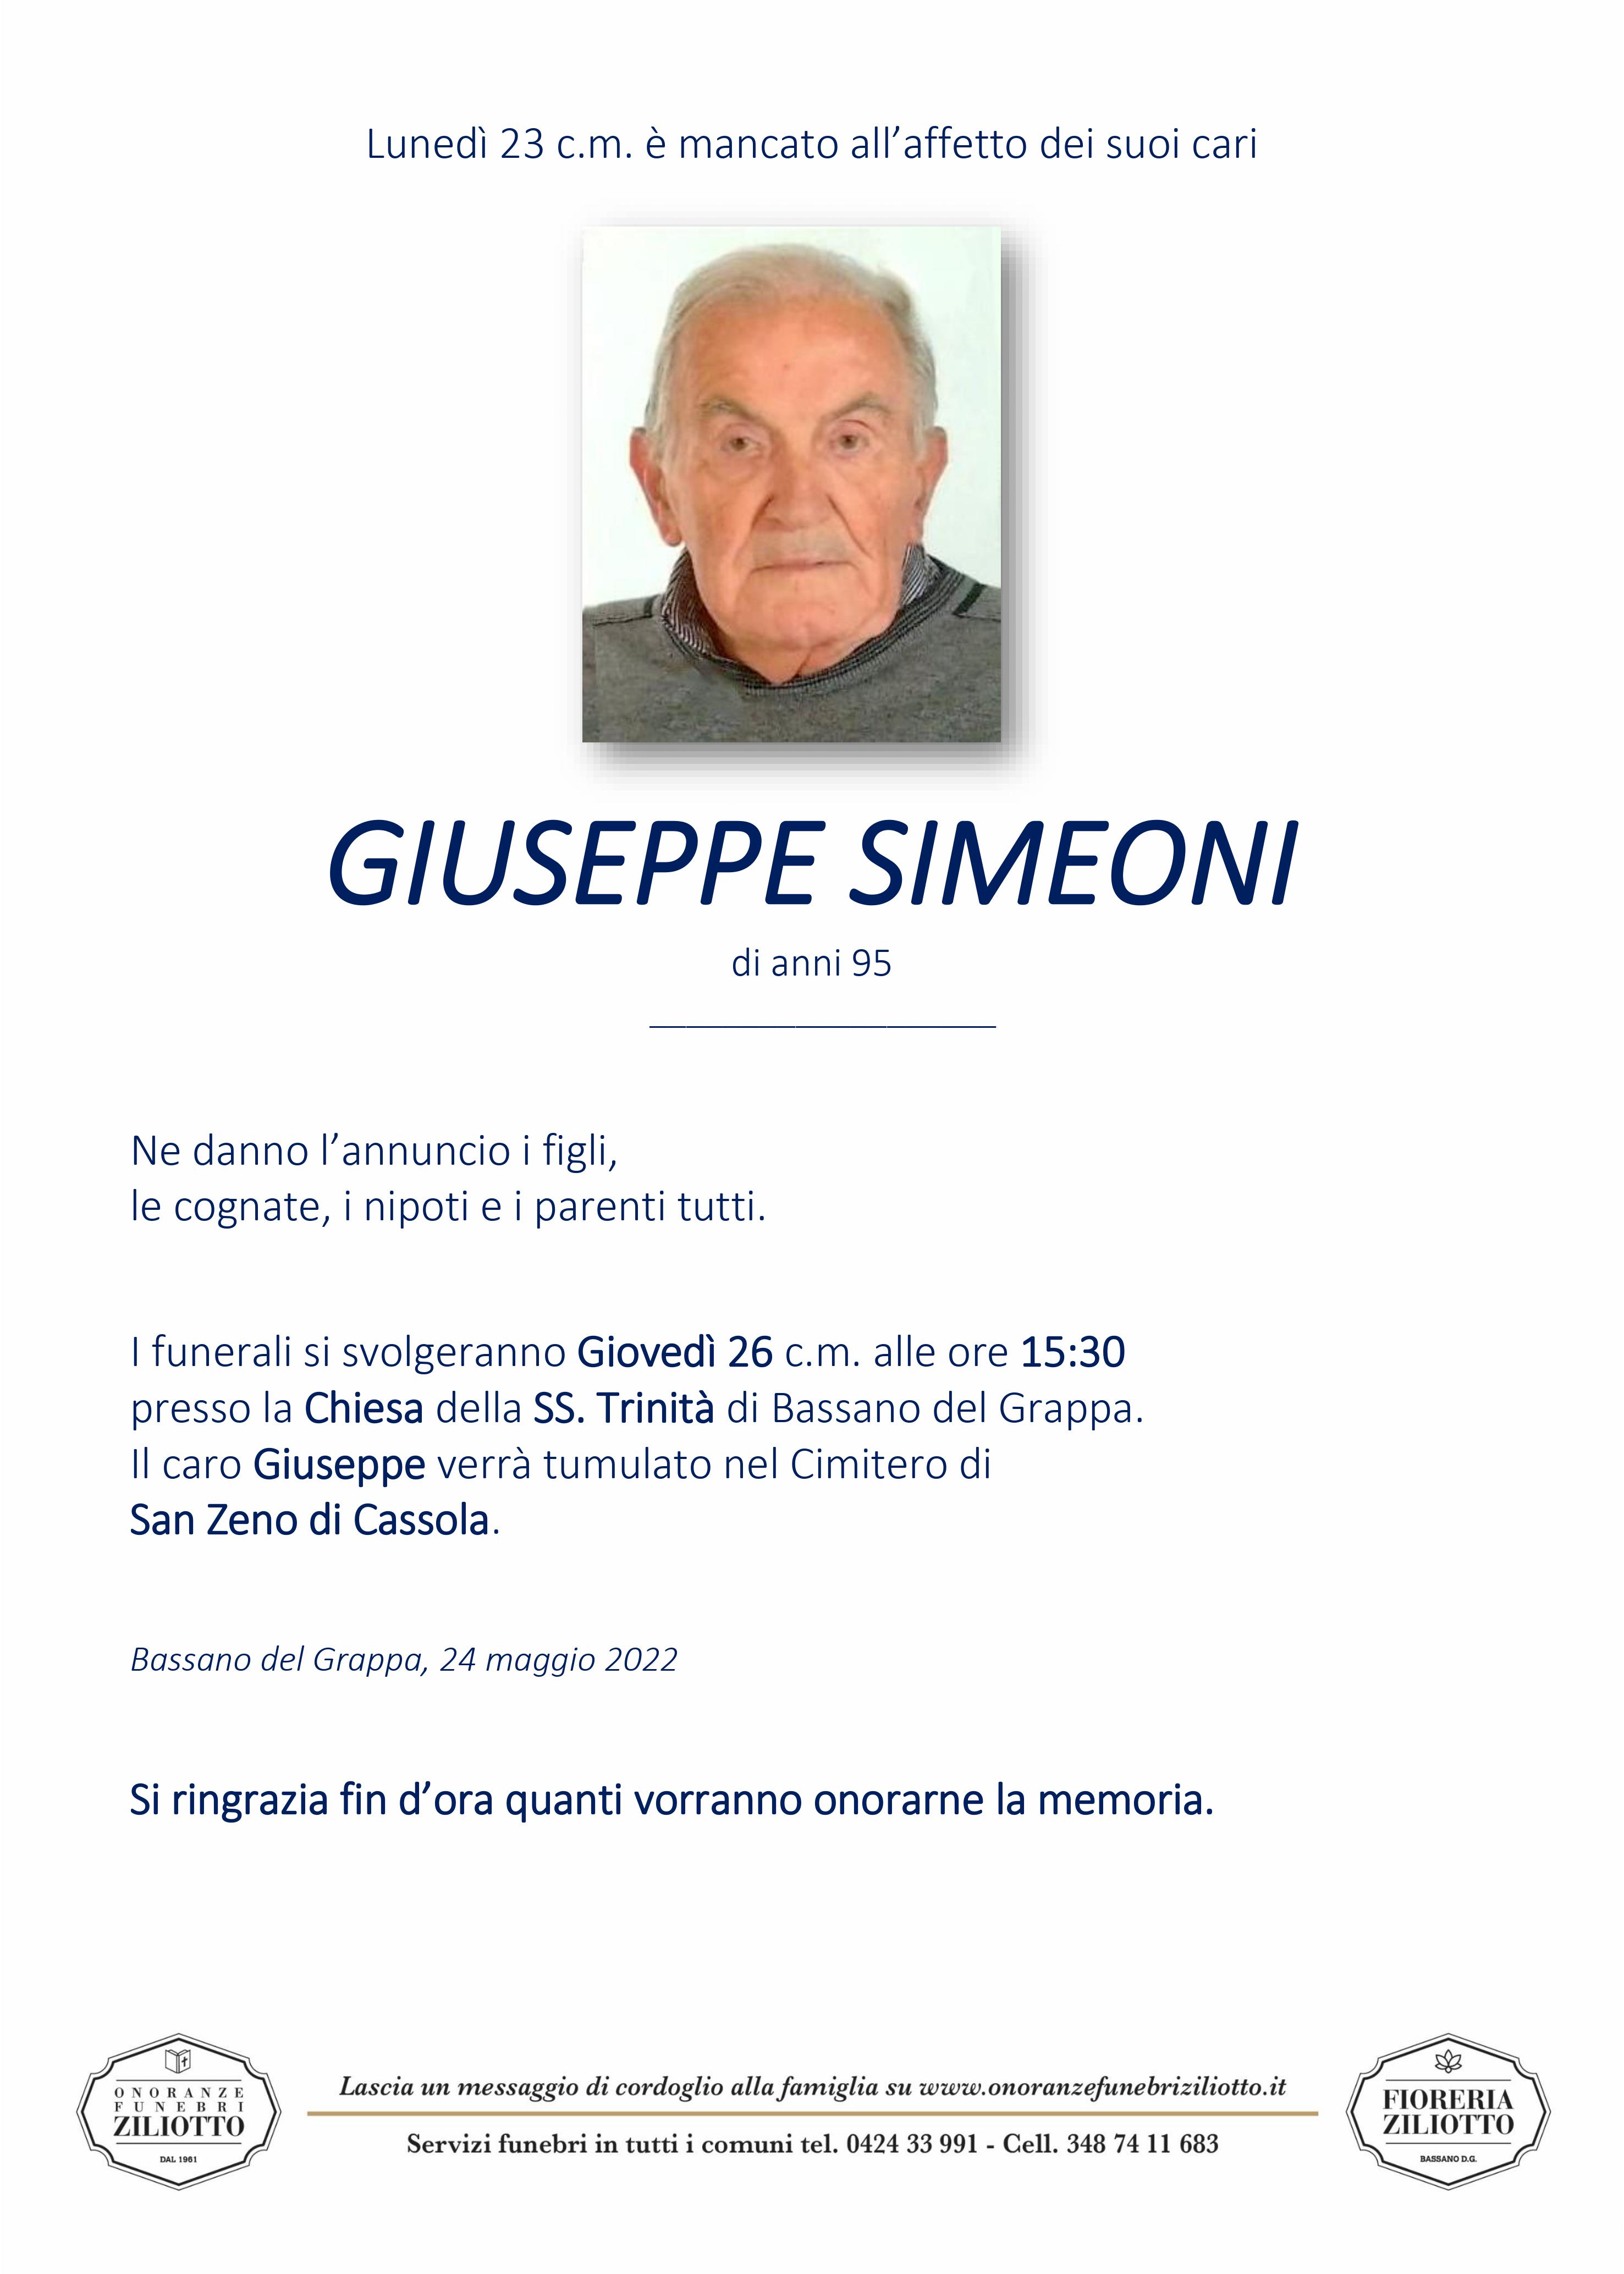 Giuseppe Simeoni - 95 anni - Bassano del Grappa